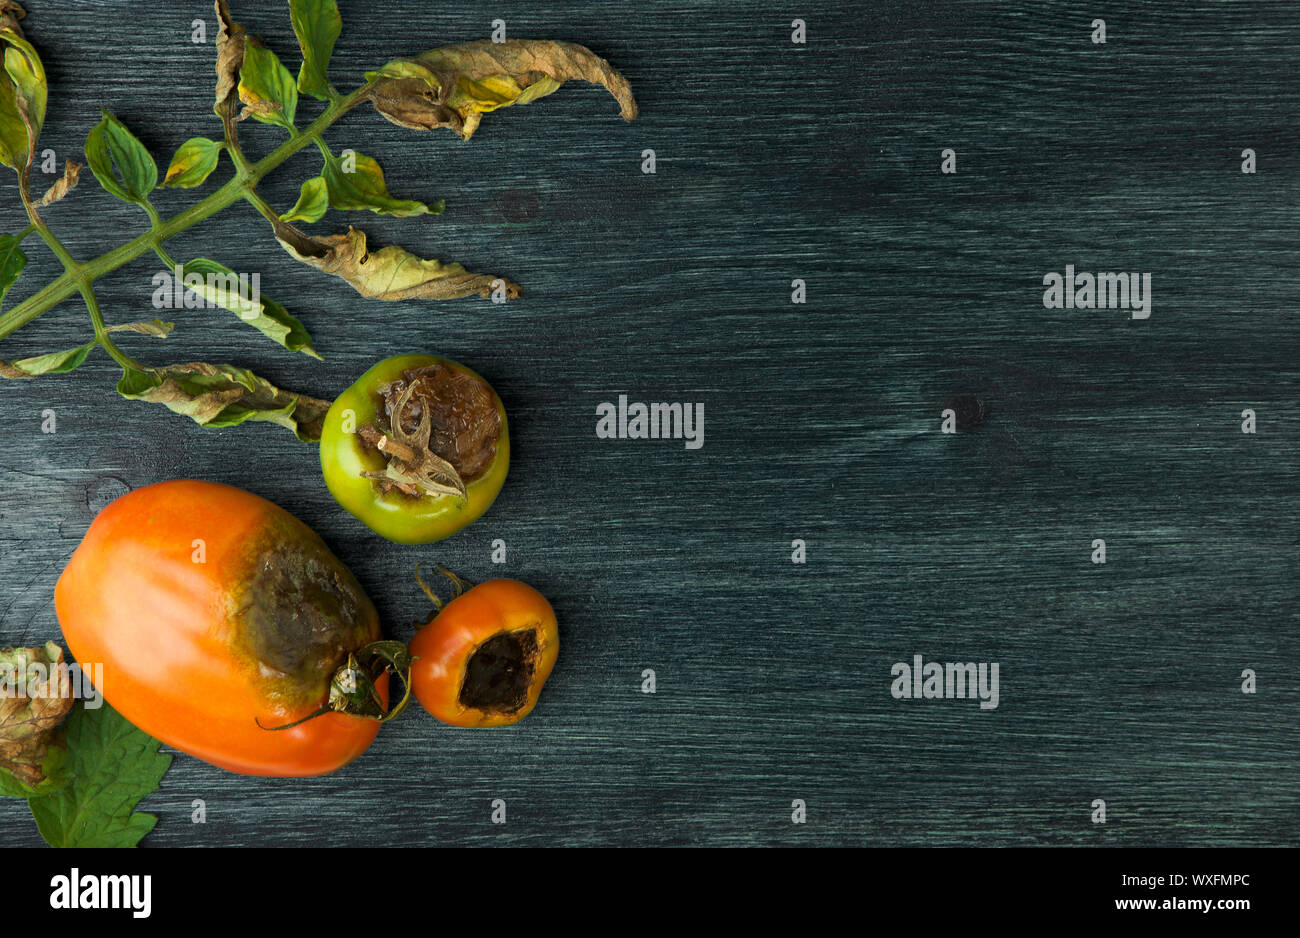 Gemüse auf Hintergrund. SICK GEMÜSE AUF EINEM HOLZ- Oberfläche. Platz kopieren Stockfoto